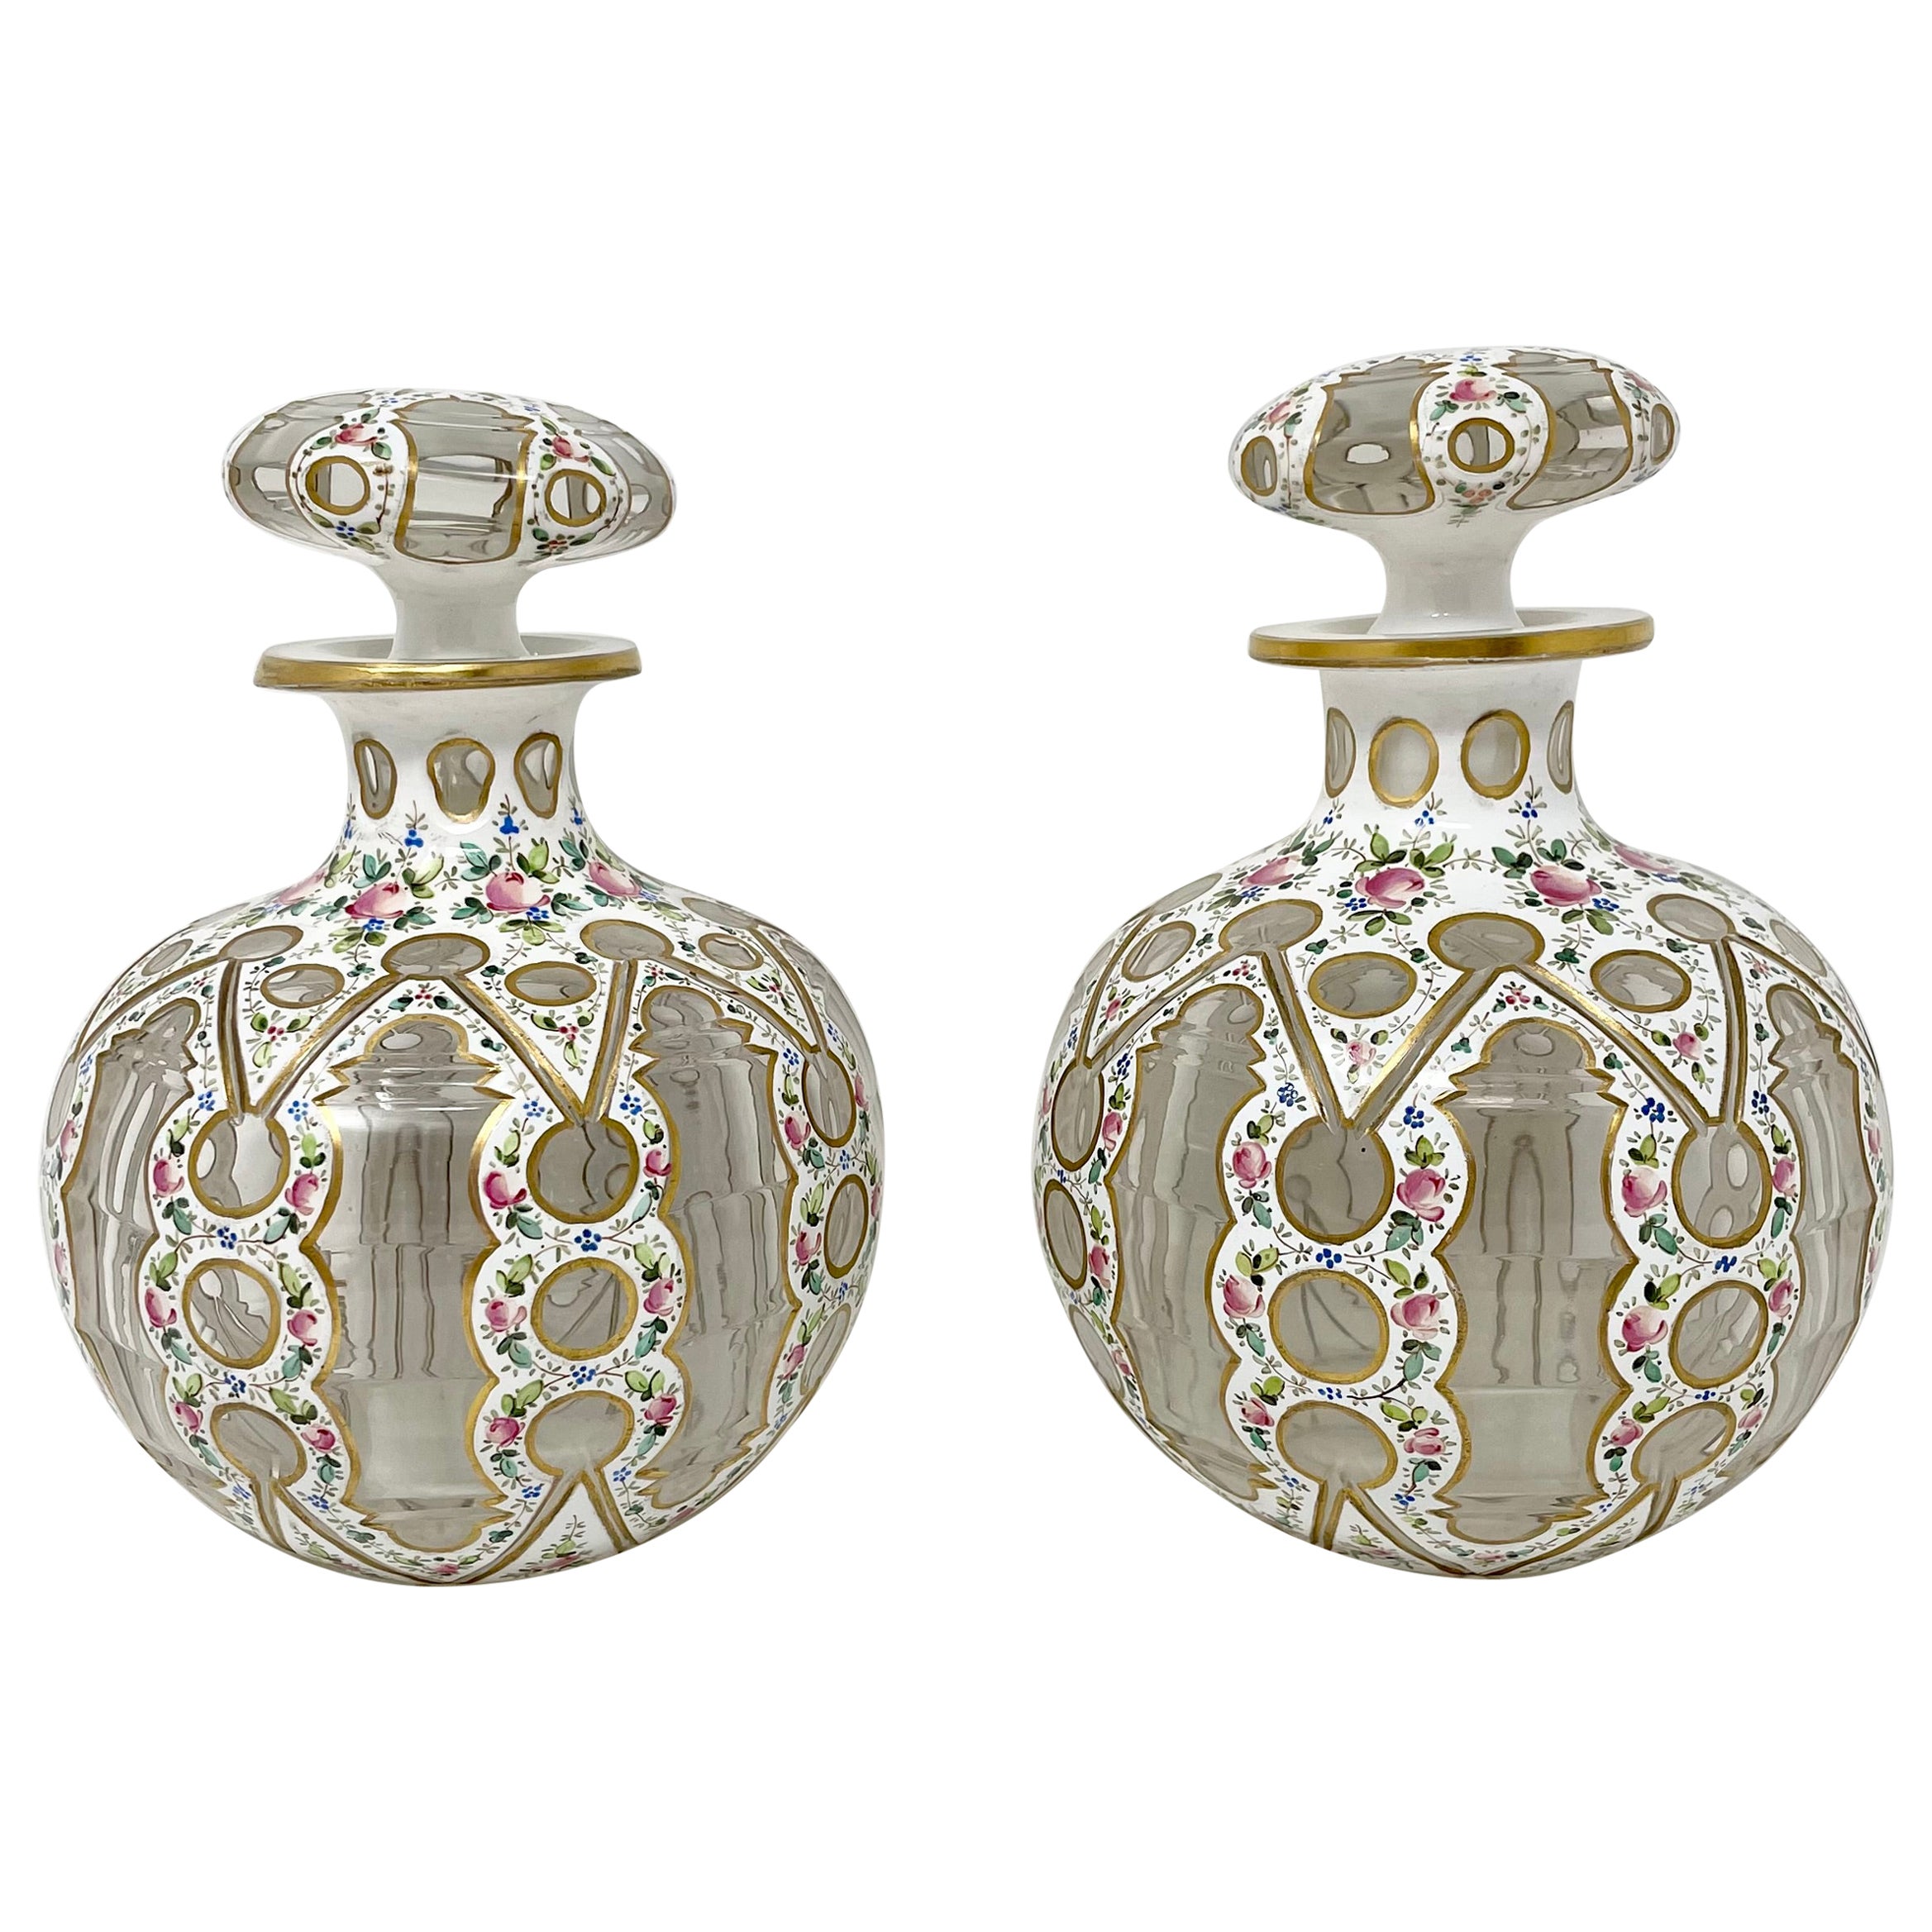 Paire de flacons de parfum français anciens en porcelaine émaillée et verre, vers 1860-1870.